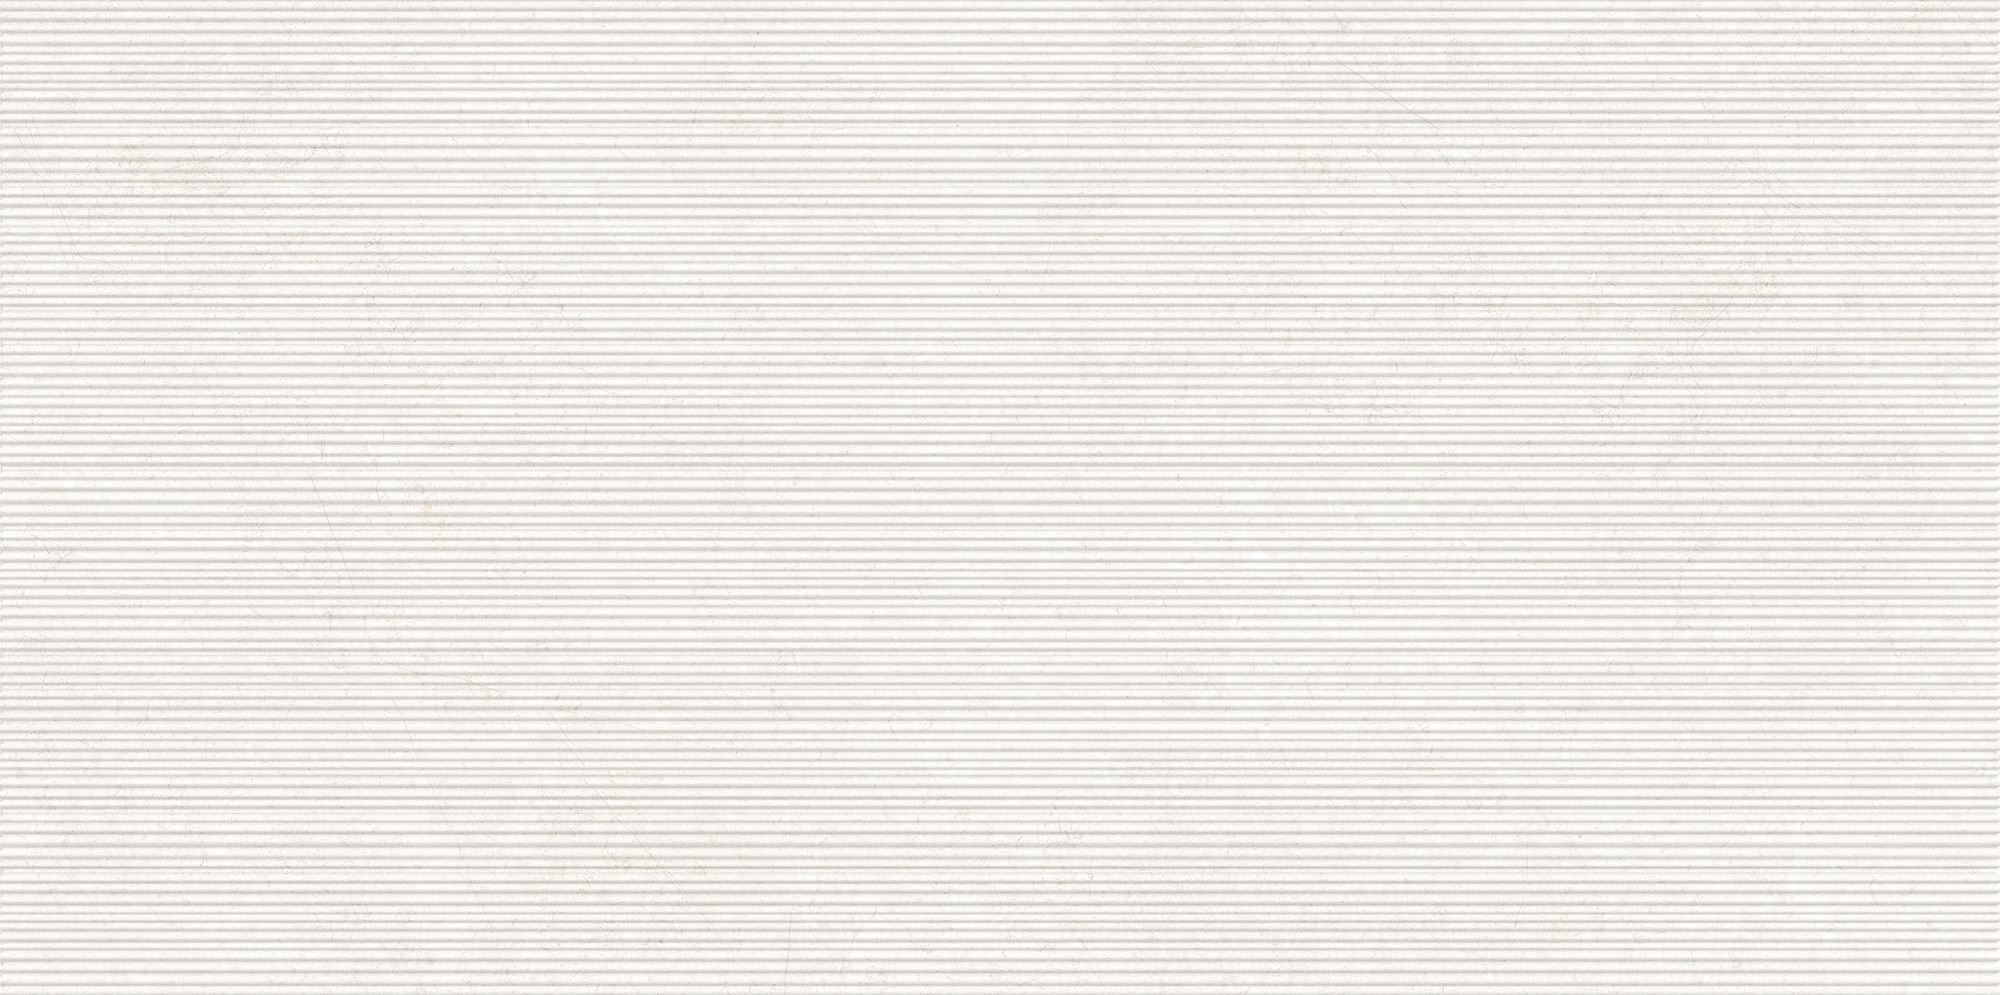 Керамогранит Barsoom KMF 60x120 - Art##0007791 / коллекция Barsoom NANOGRESS / производитель NANOGRESS / страна Китай